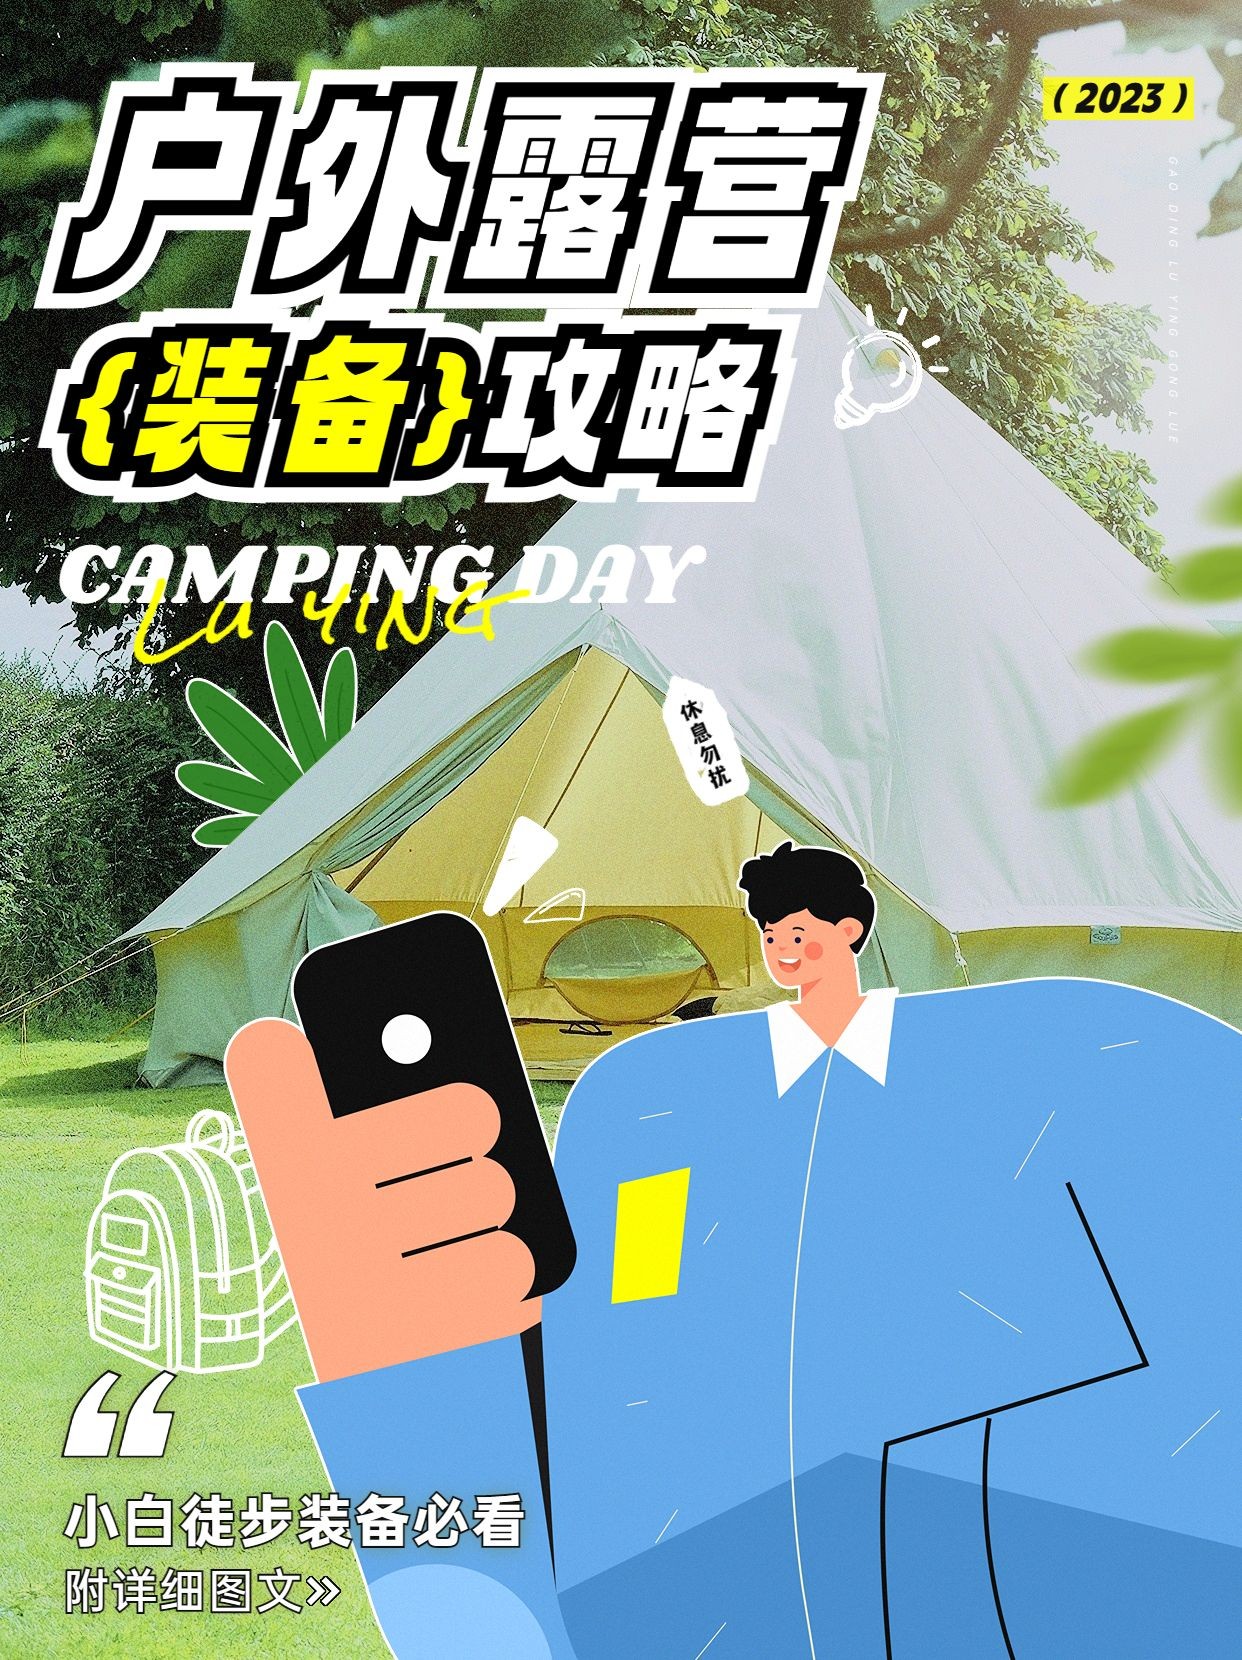 旅游户外露营装备攻略卡通涂鸦风小红书封面预览效果